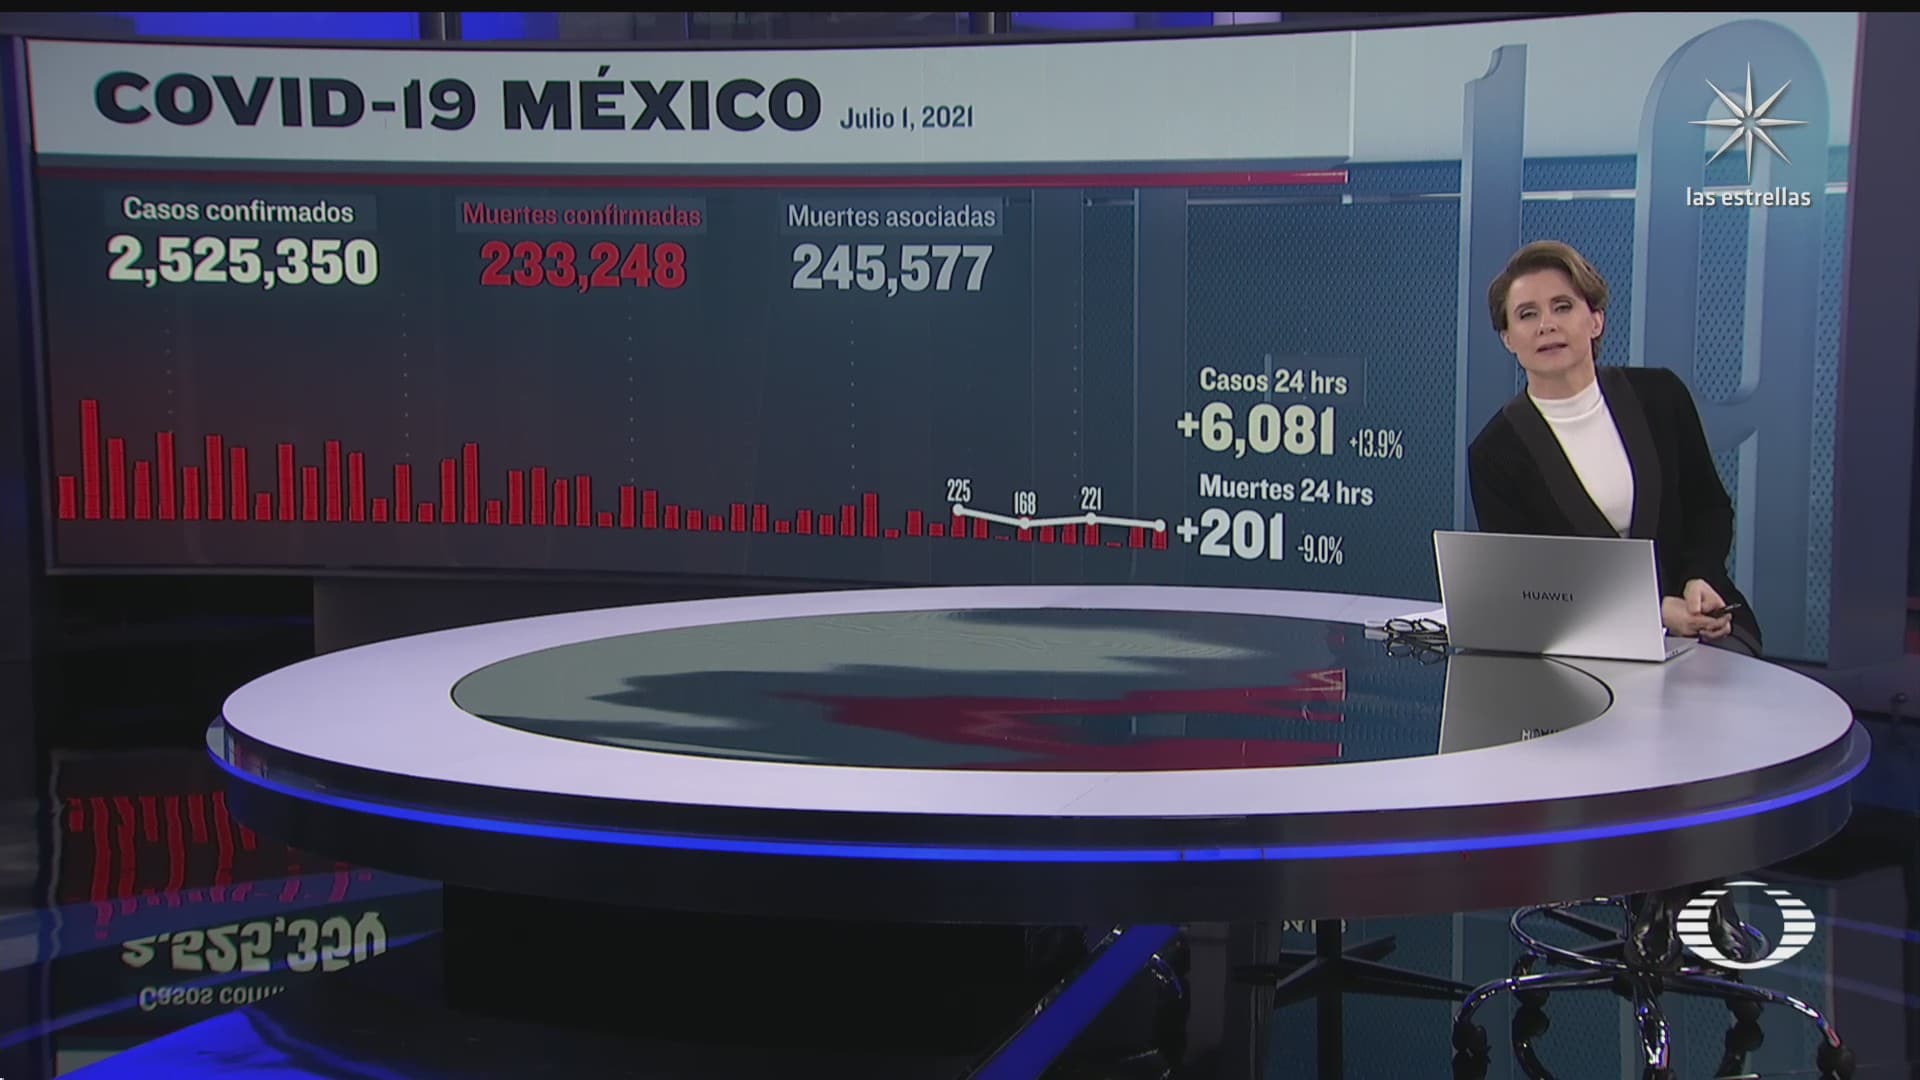 suman 233 mil 248 muertos por covid 19 en mexico